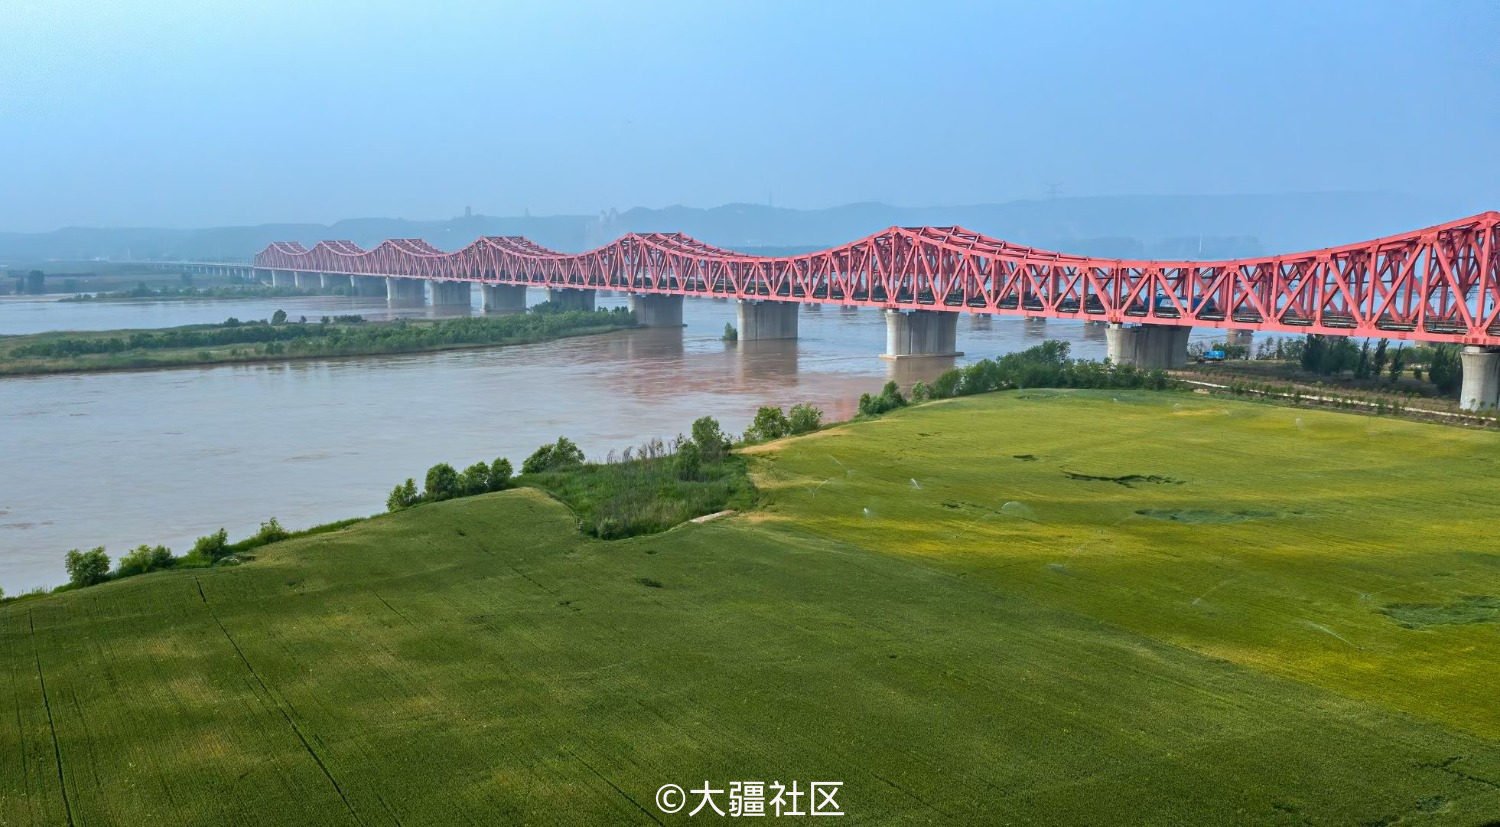 京广线黄河大桥